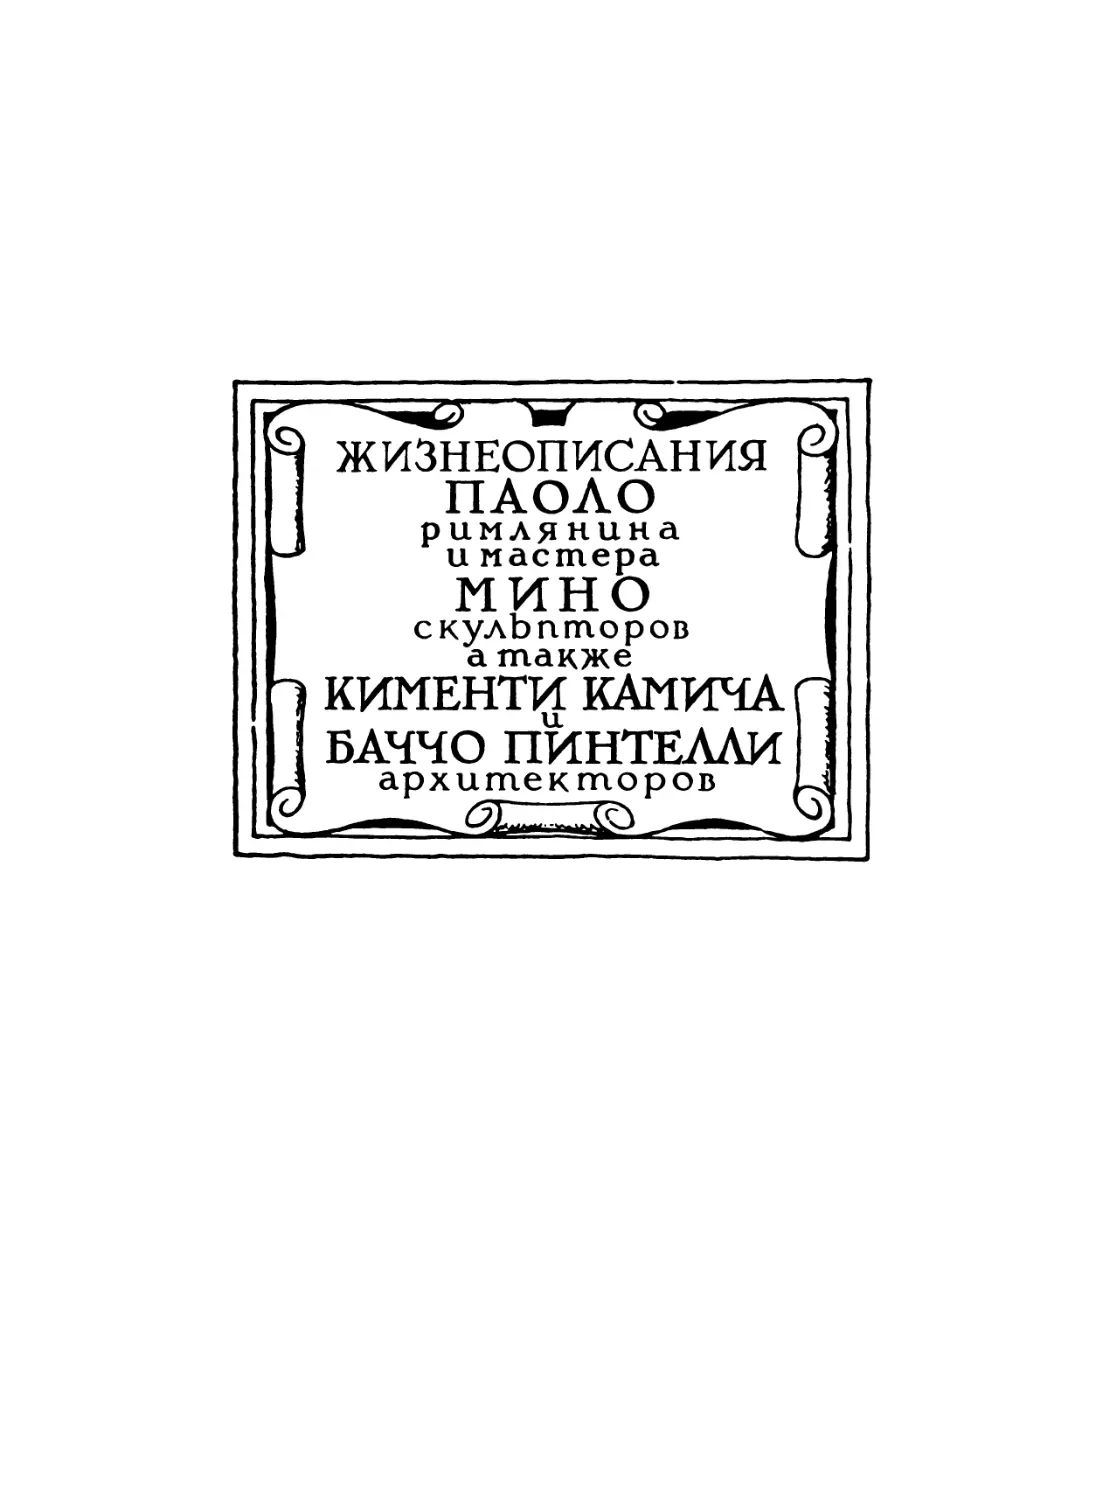 Жизнеописания Паоло Римлянина и мастера Мино, скульпторов, а также Кименти Камича и Баччо Пинтелли, архитекторов